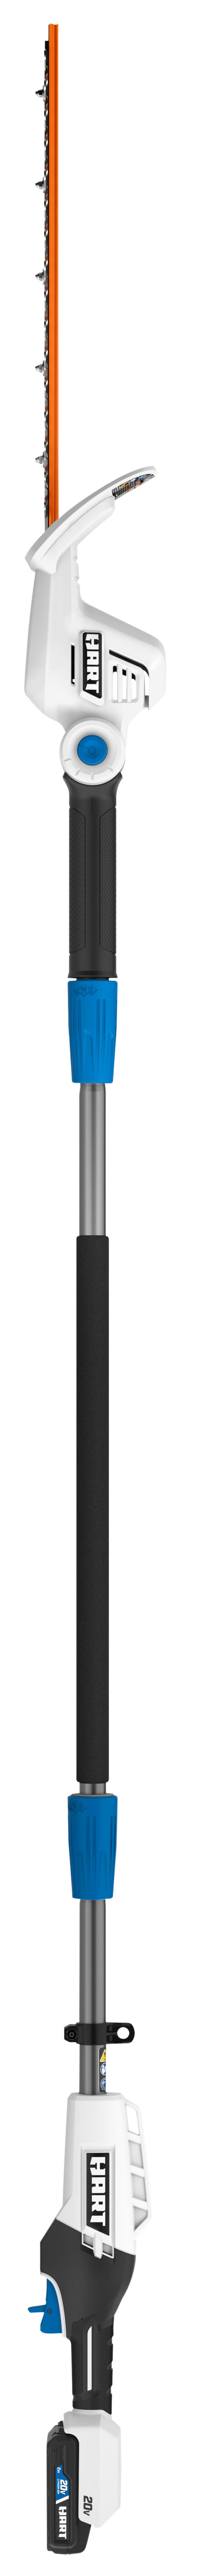 20V Cordless Pole Hedge Trimmer Kit